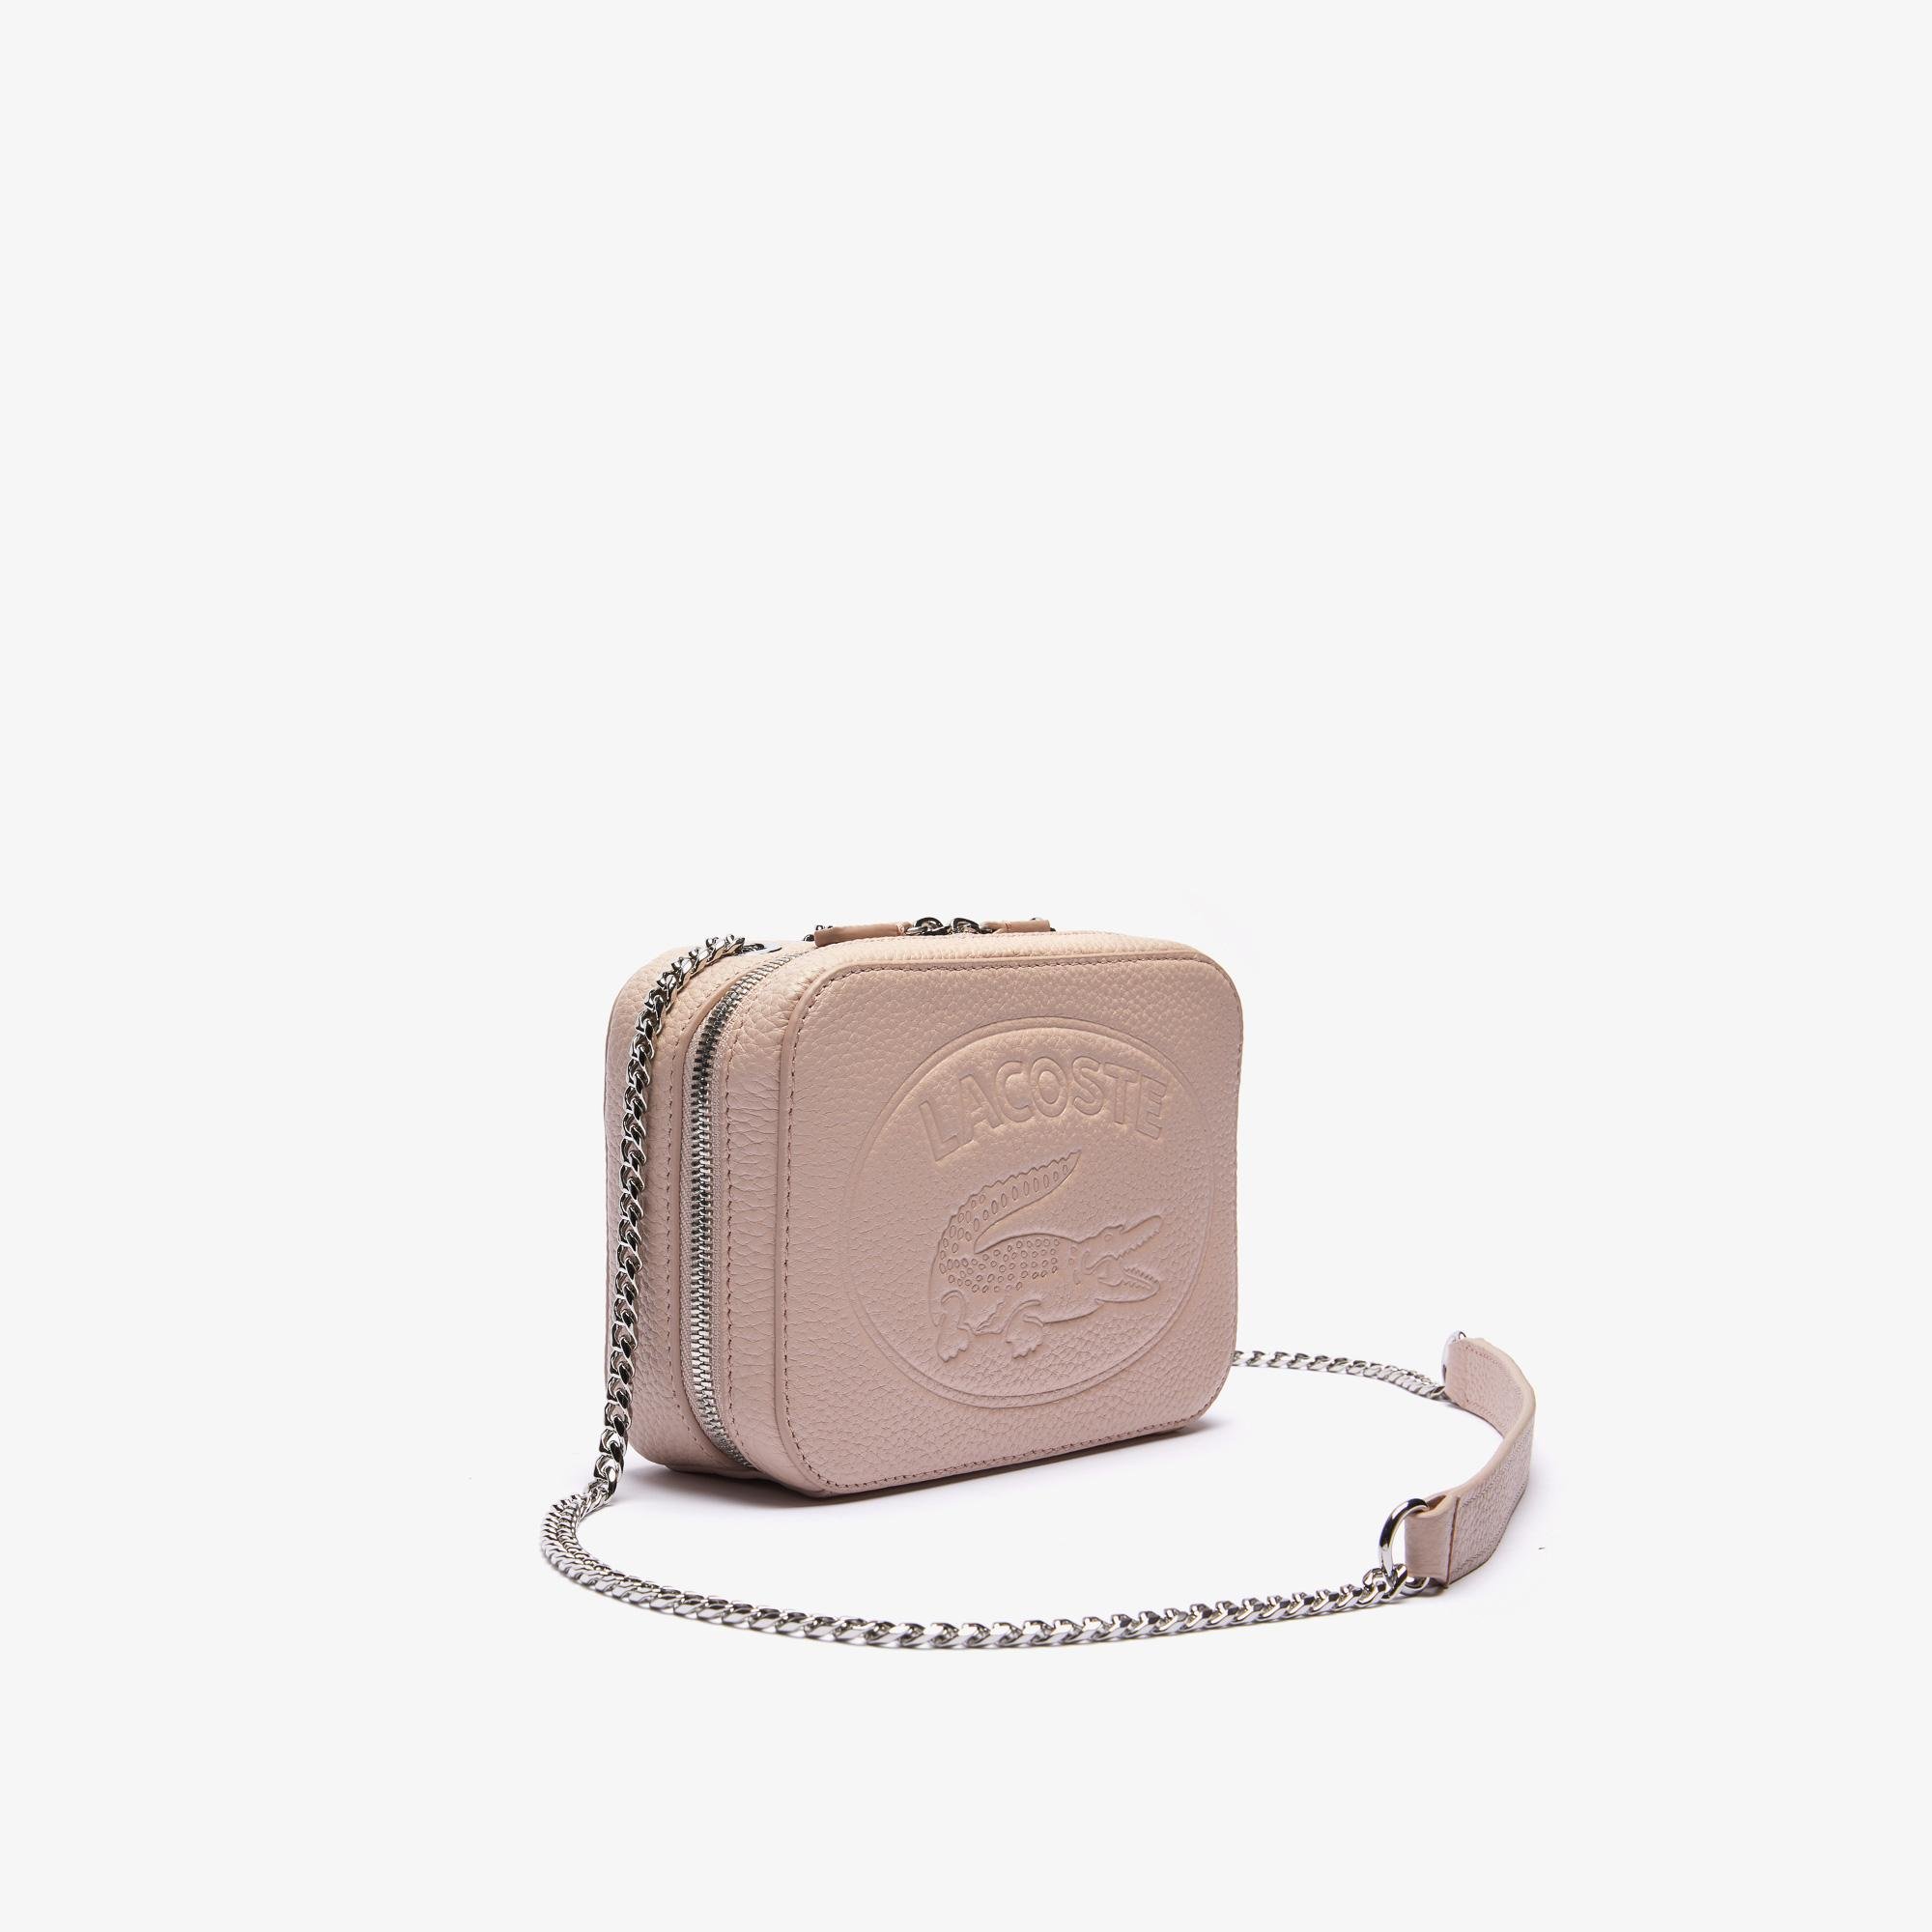 Lacoste Women’s Croco Crew Grained Leather Zip Shoulder Bag